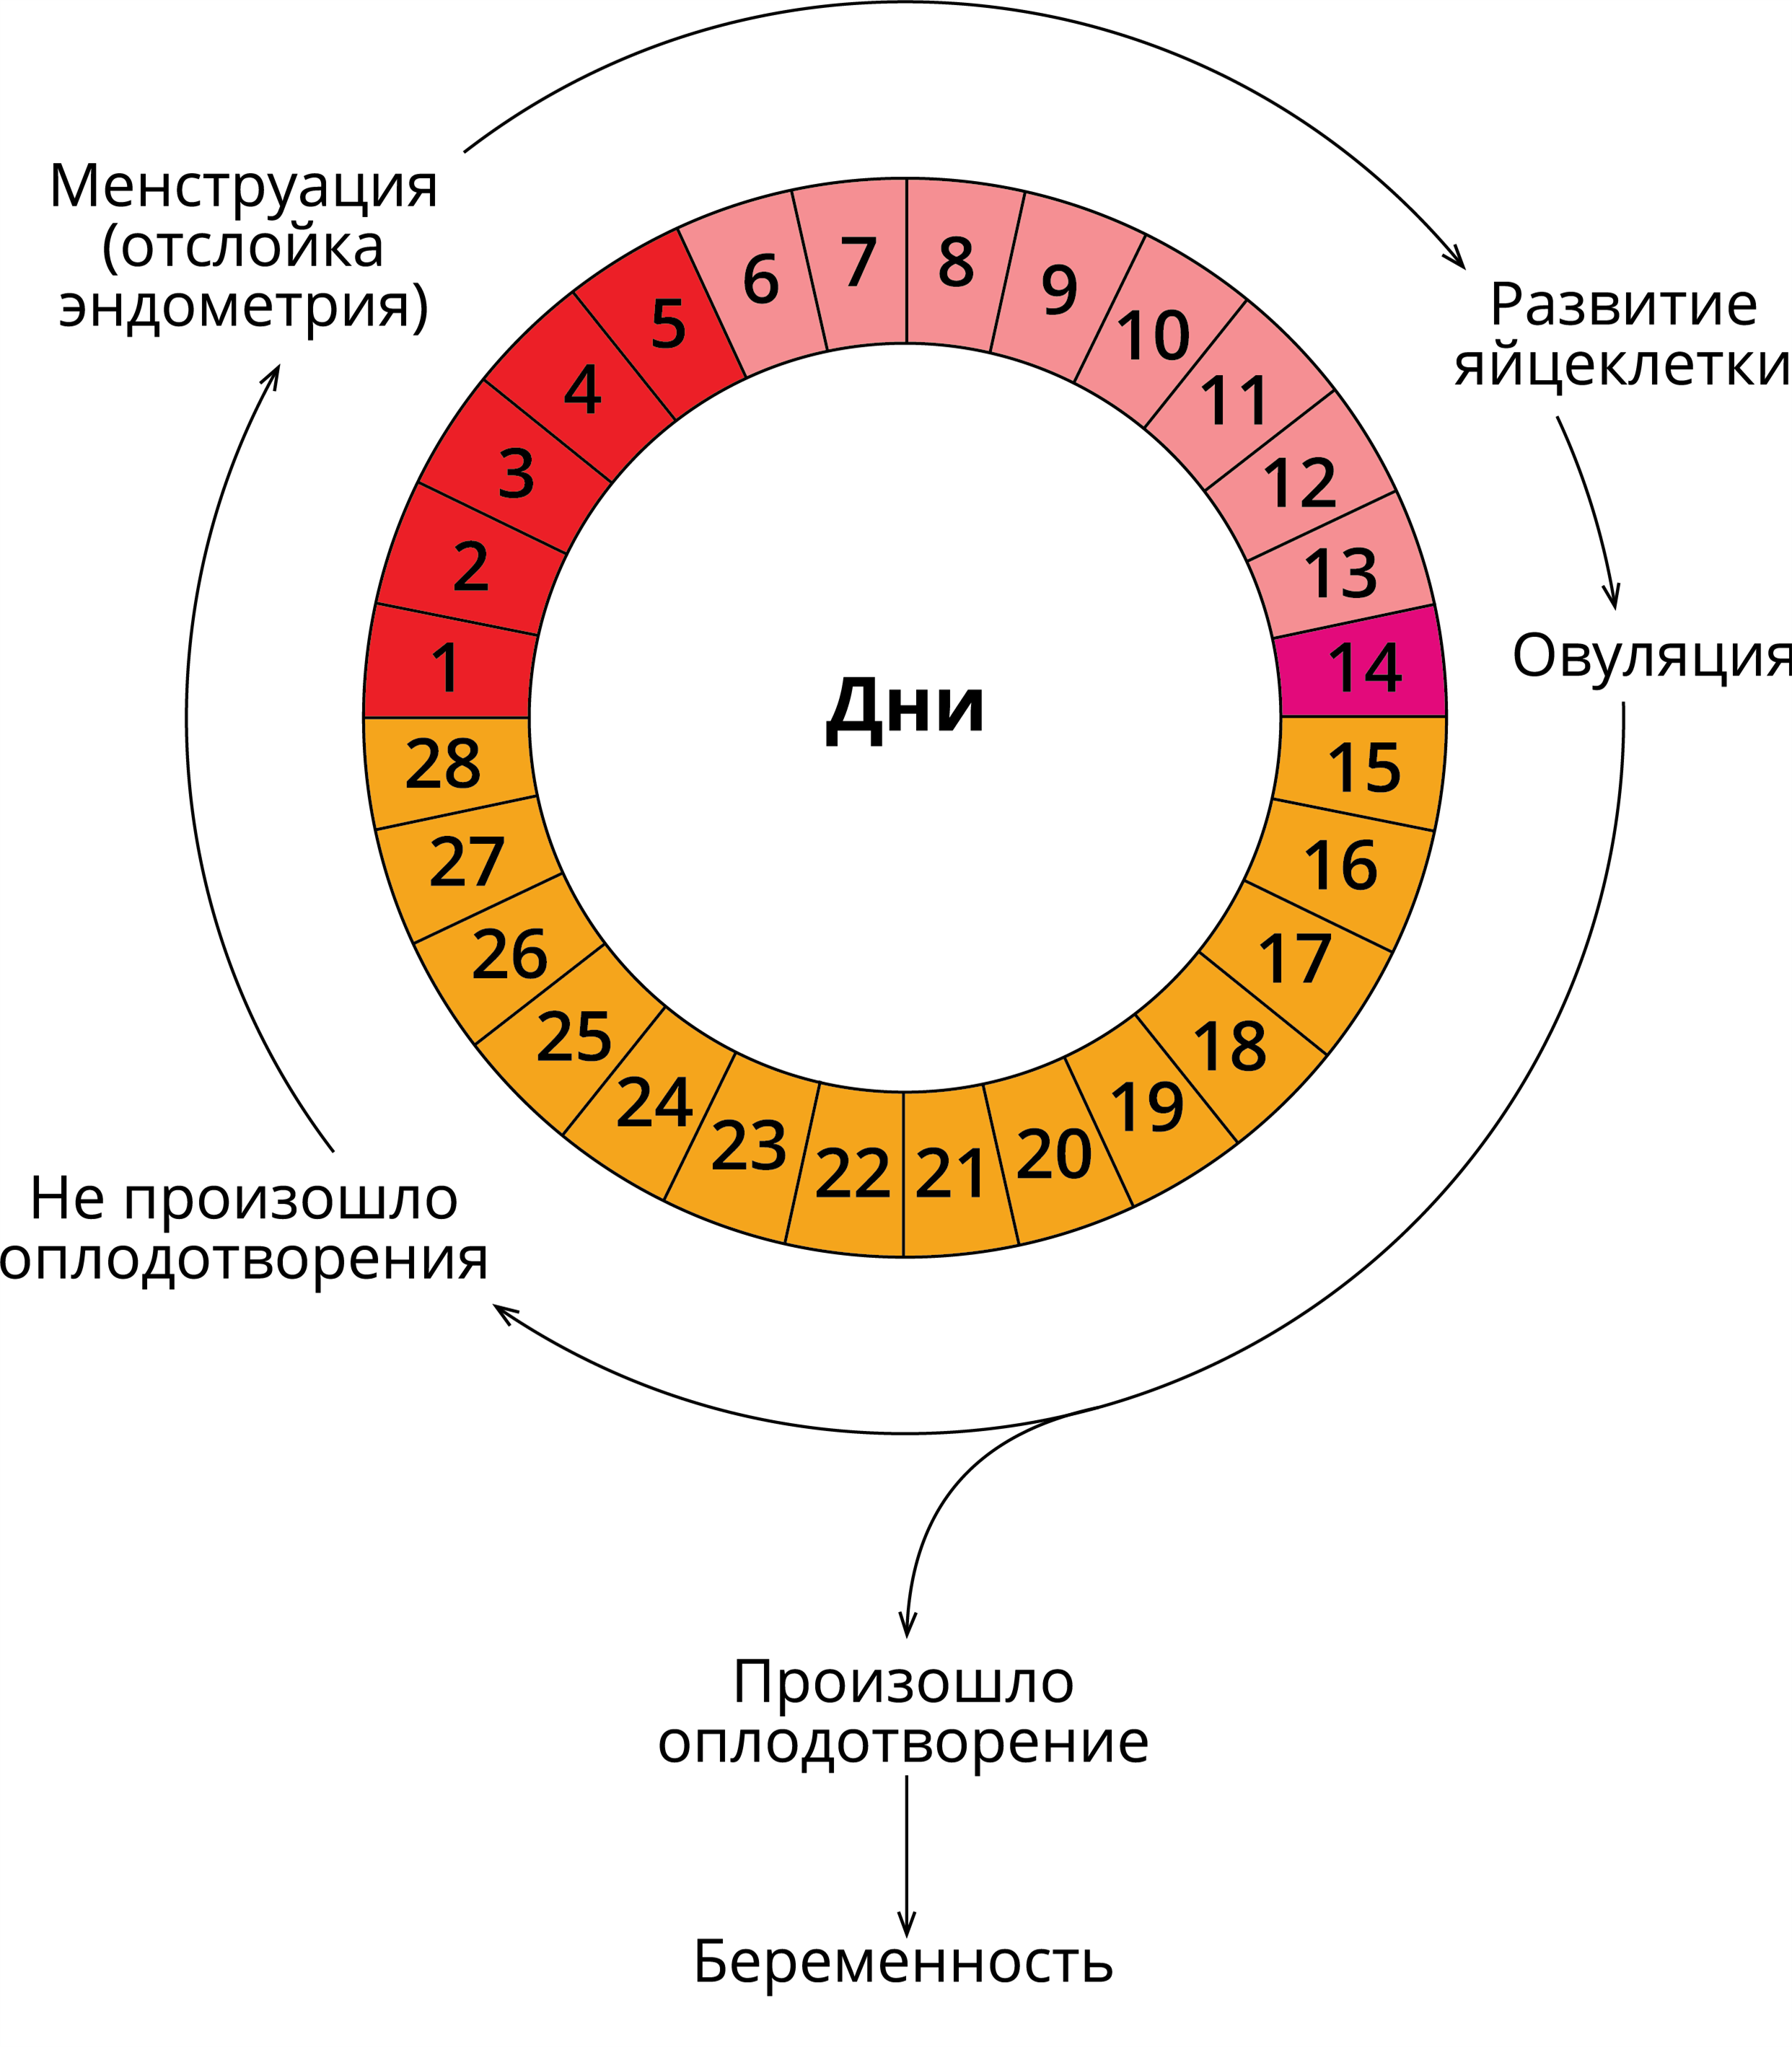 Схема цикличность этапов менструального цикла. Двухфазный менструационный цикл схема. Фазы менструационного цикла физиология. Фазы менструационного цикла анатомия.